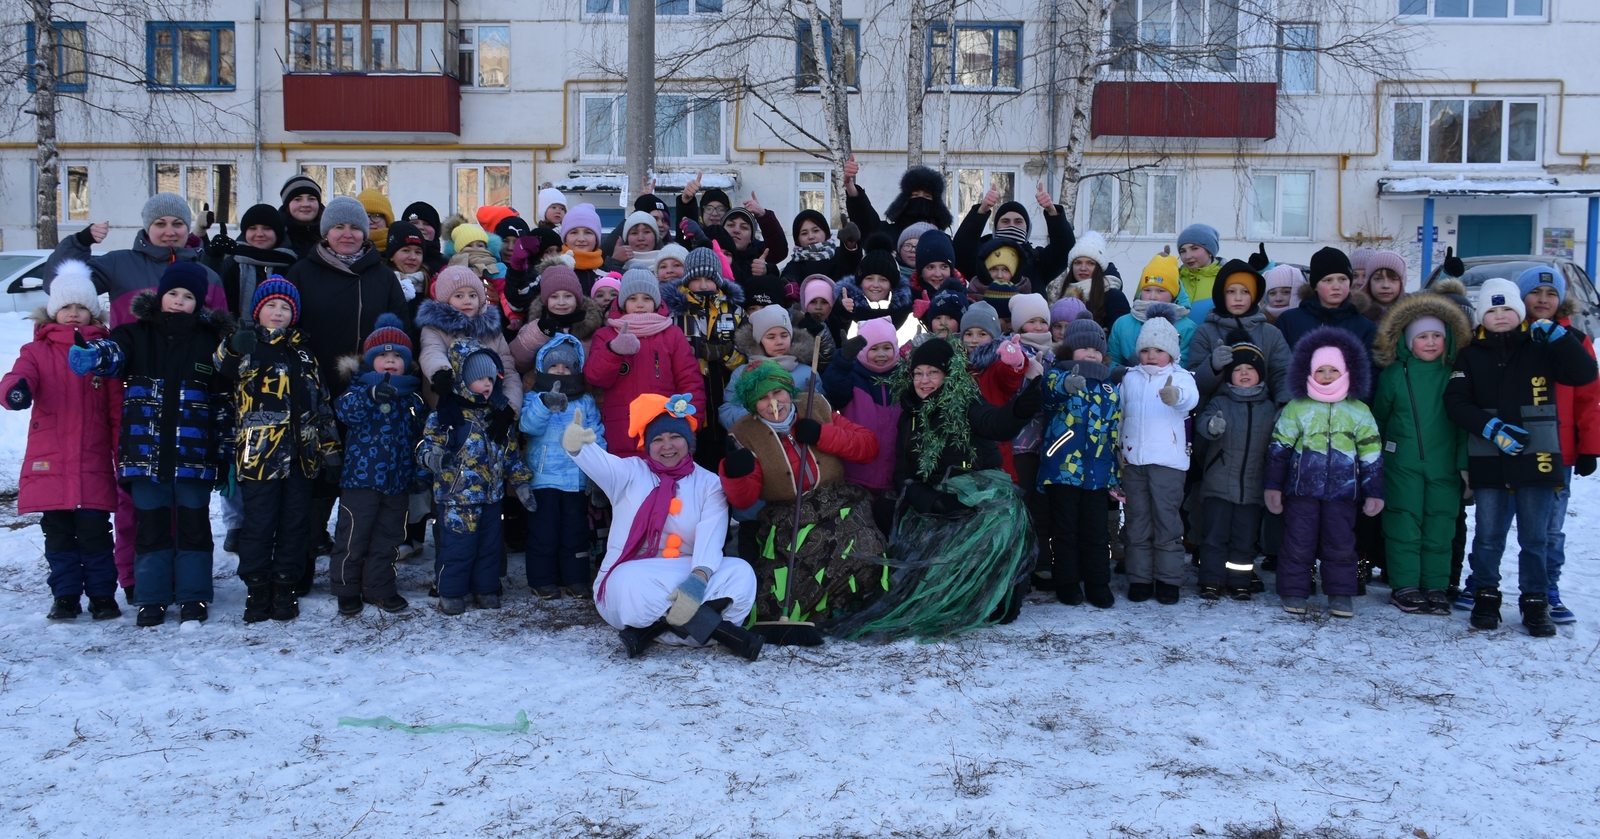 Зимний праздник для детей прошёл в одном из дворов Мелеуза